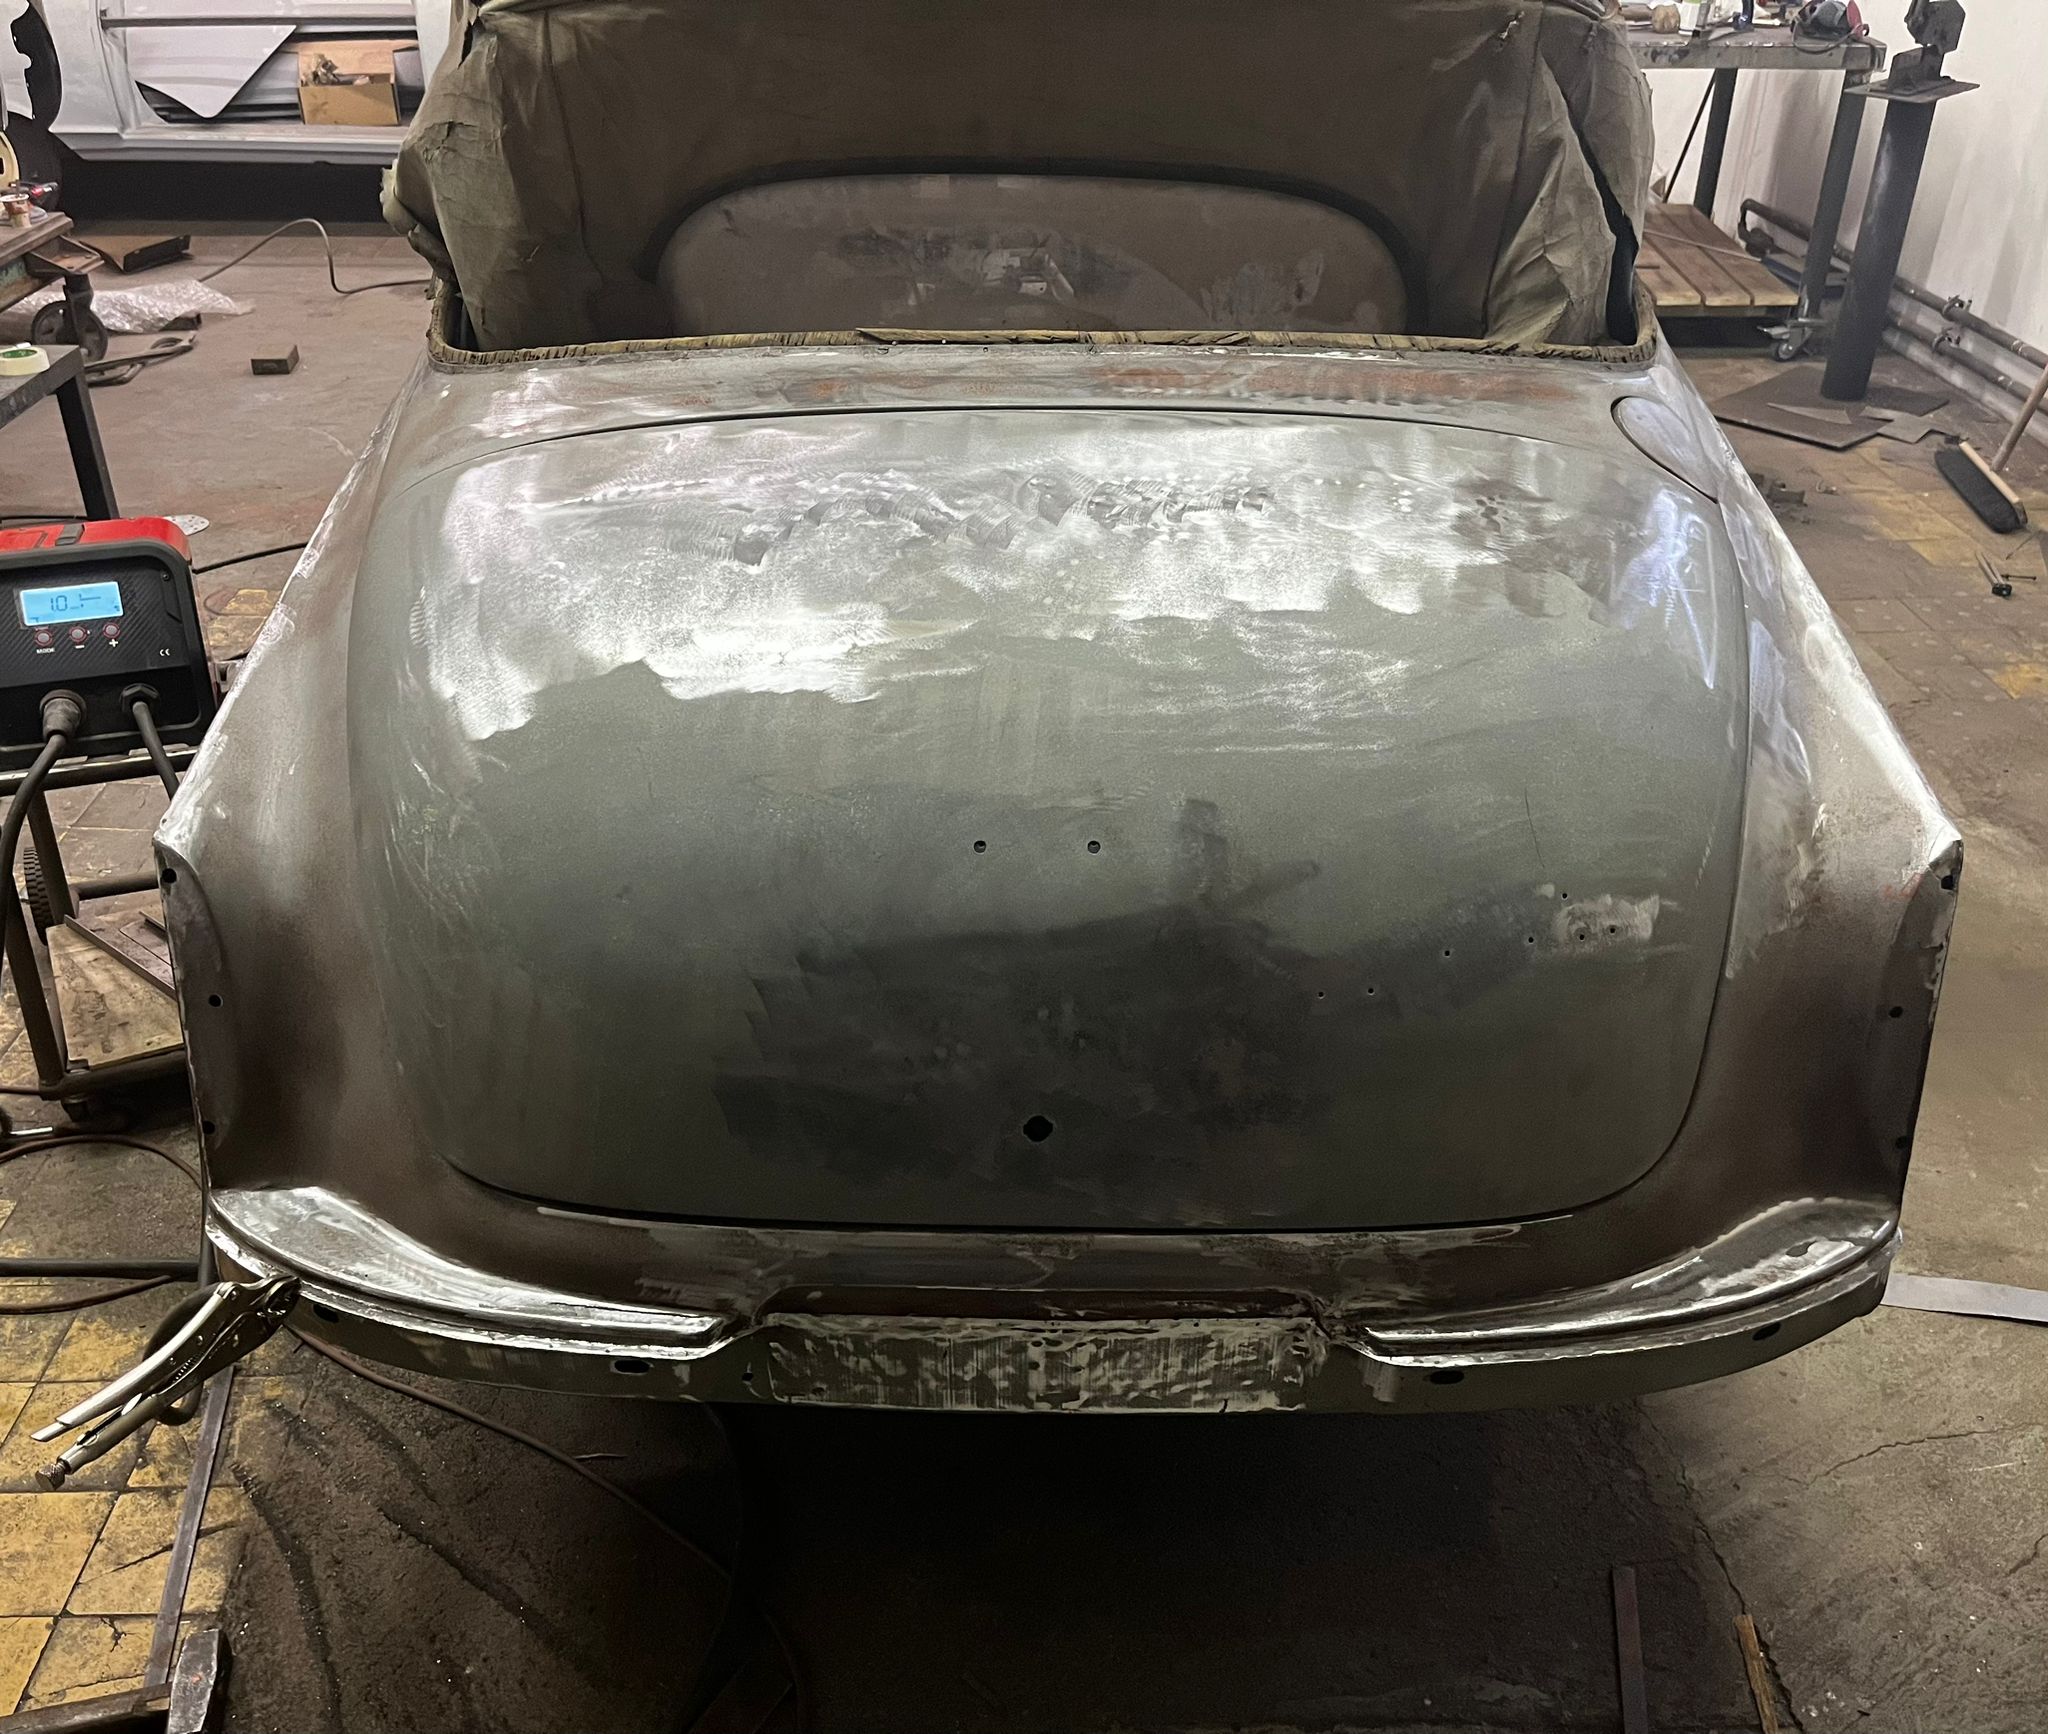 restauration restaurierung wartburg 311 cabrio karosserie kofferraumdeckel